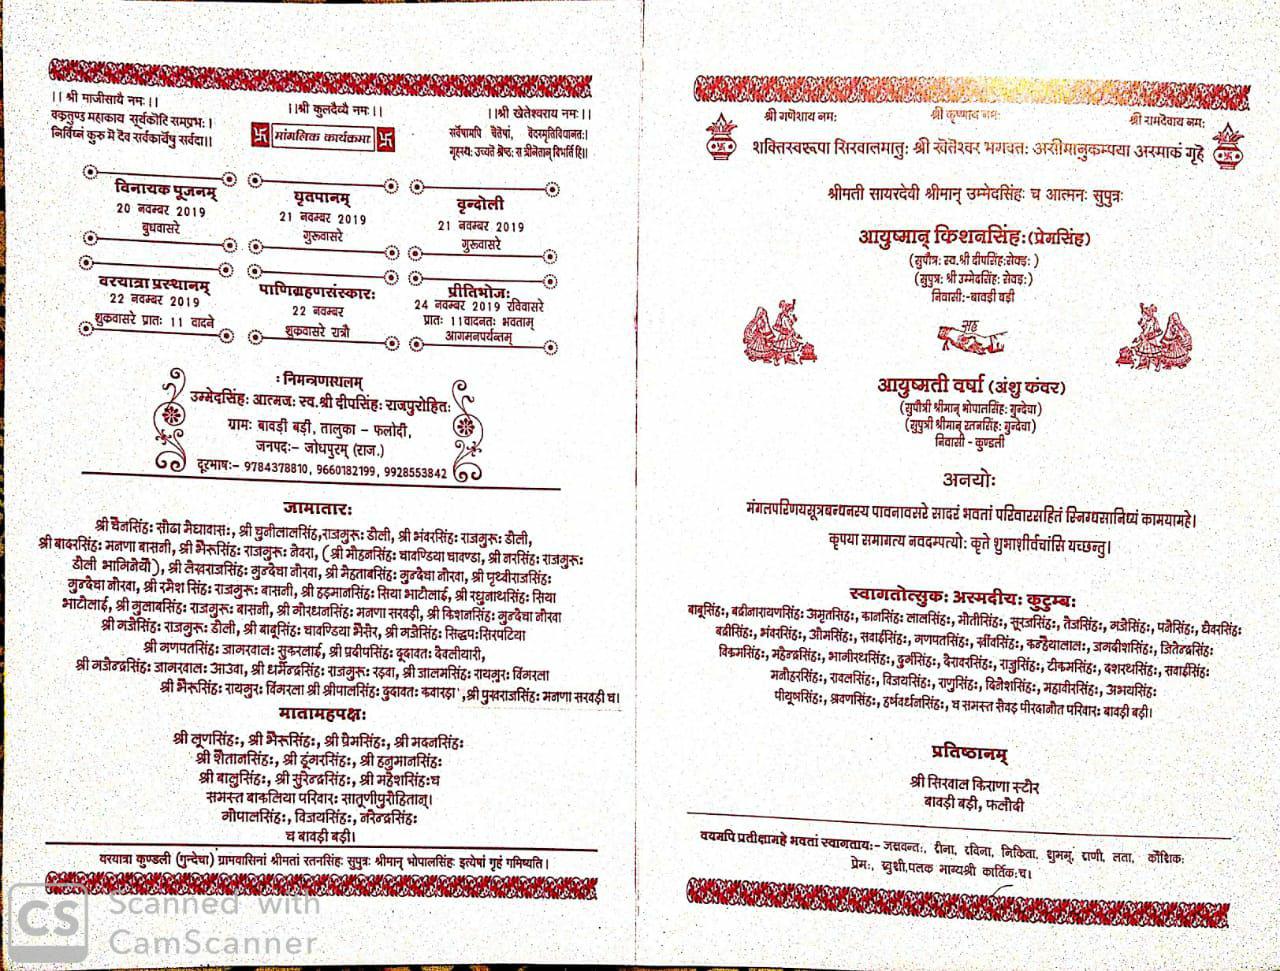 देखिए वीडियाेेेेेेेे......संस्कृत में छपवाया  कार्ड, शादी से ज्यादा कार्ड के चर्चे, 22 को शादी